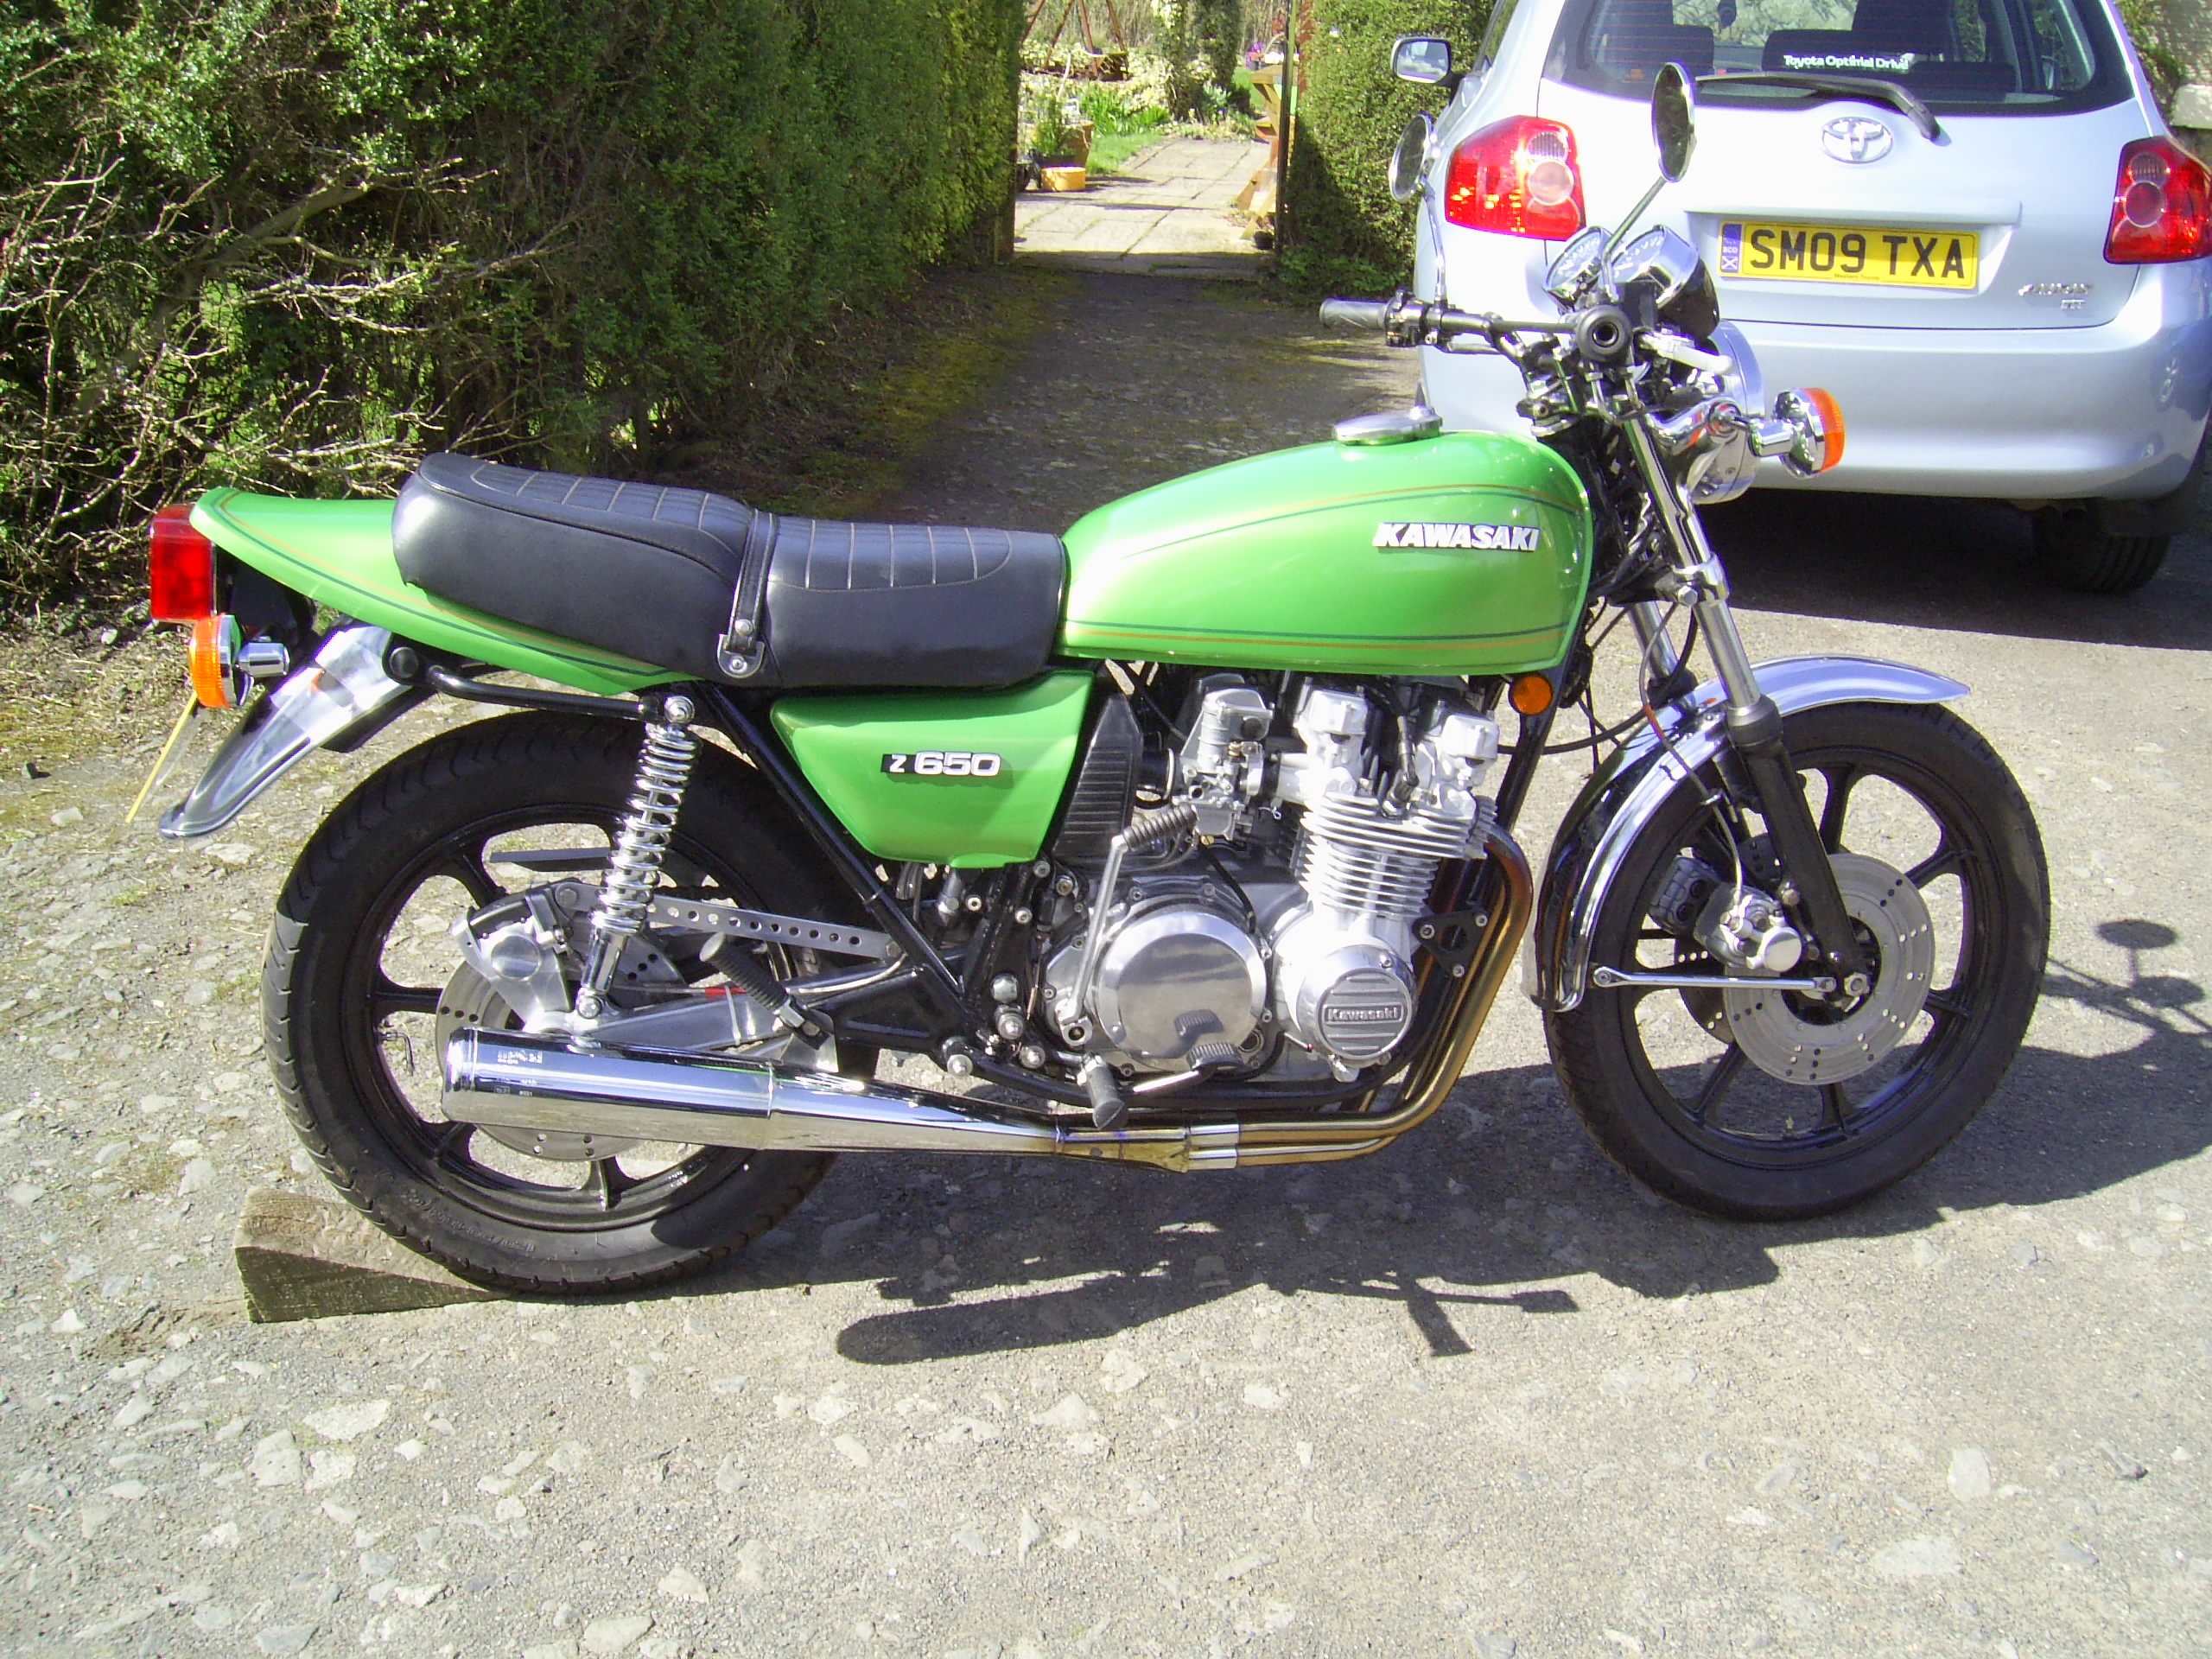 Kawasaki z650 1980 - from David Leask